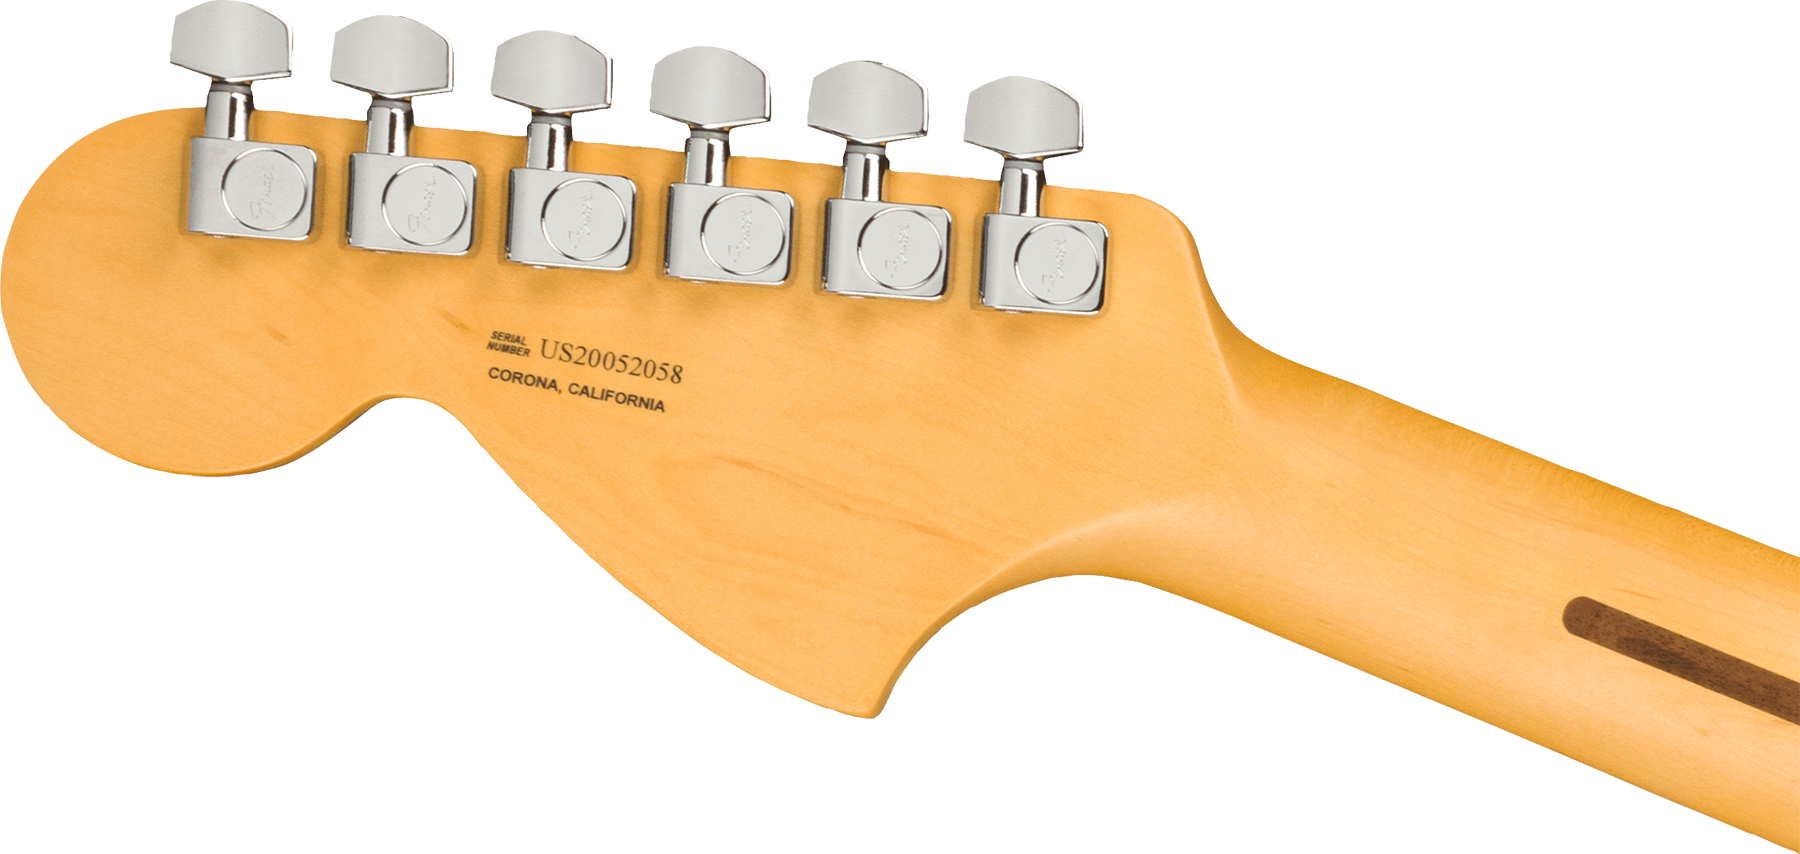 Fender Tele Deluxe American Professional Ii Usa Rw - Dark Night - Guitarra eléctrica con forma de tel - Variation 3